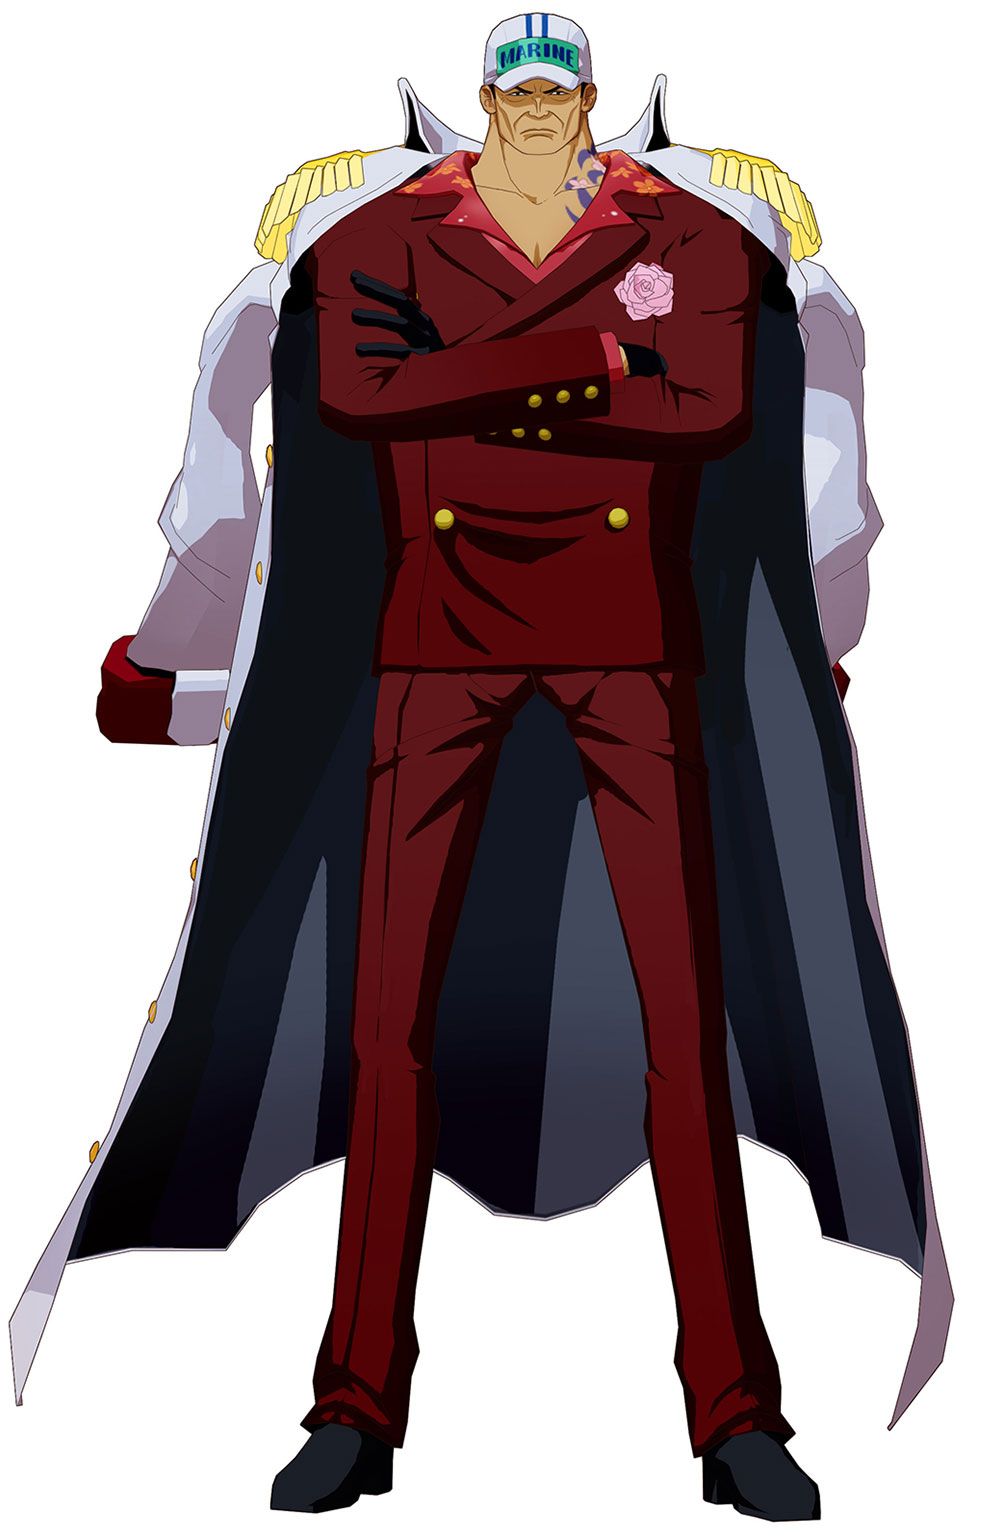 Sakazuki: Hãy chiêm ngưỡng vẻ đẹp quyến rũ của Tướng Sakazuki - một trong những tướng huyền thoại của Lực lượng Hải quân. Với sức mạnh phi thường và khả năng chiến đấu đáng sợ, Sakazuki đã trở thành một đối thủ đáng gờm của nhóm hải tặc Mũ Rơm. Hãy cùng xem hình ảnh này để khám phá sức mạnh của Sakazuki nhé!